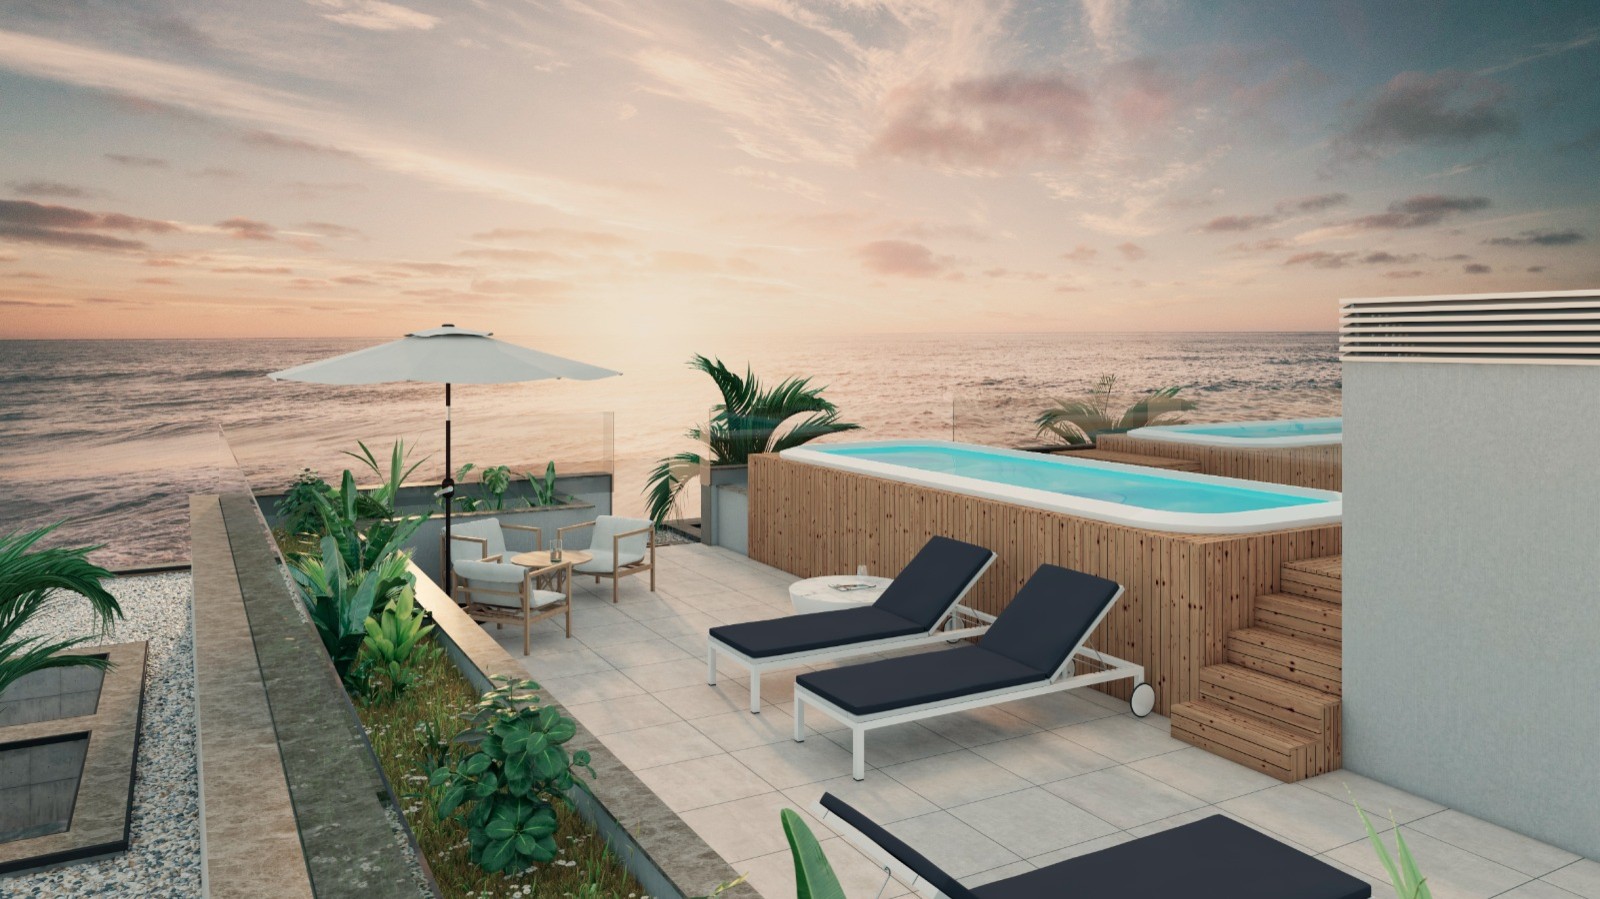 Apartamento T2 com vista de mar, terraço e jacuzzi, para venda, Gaia, Portugal_250246